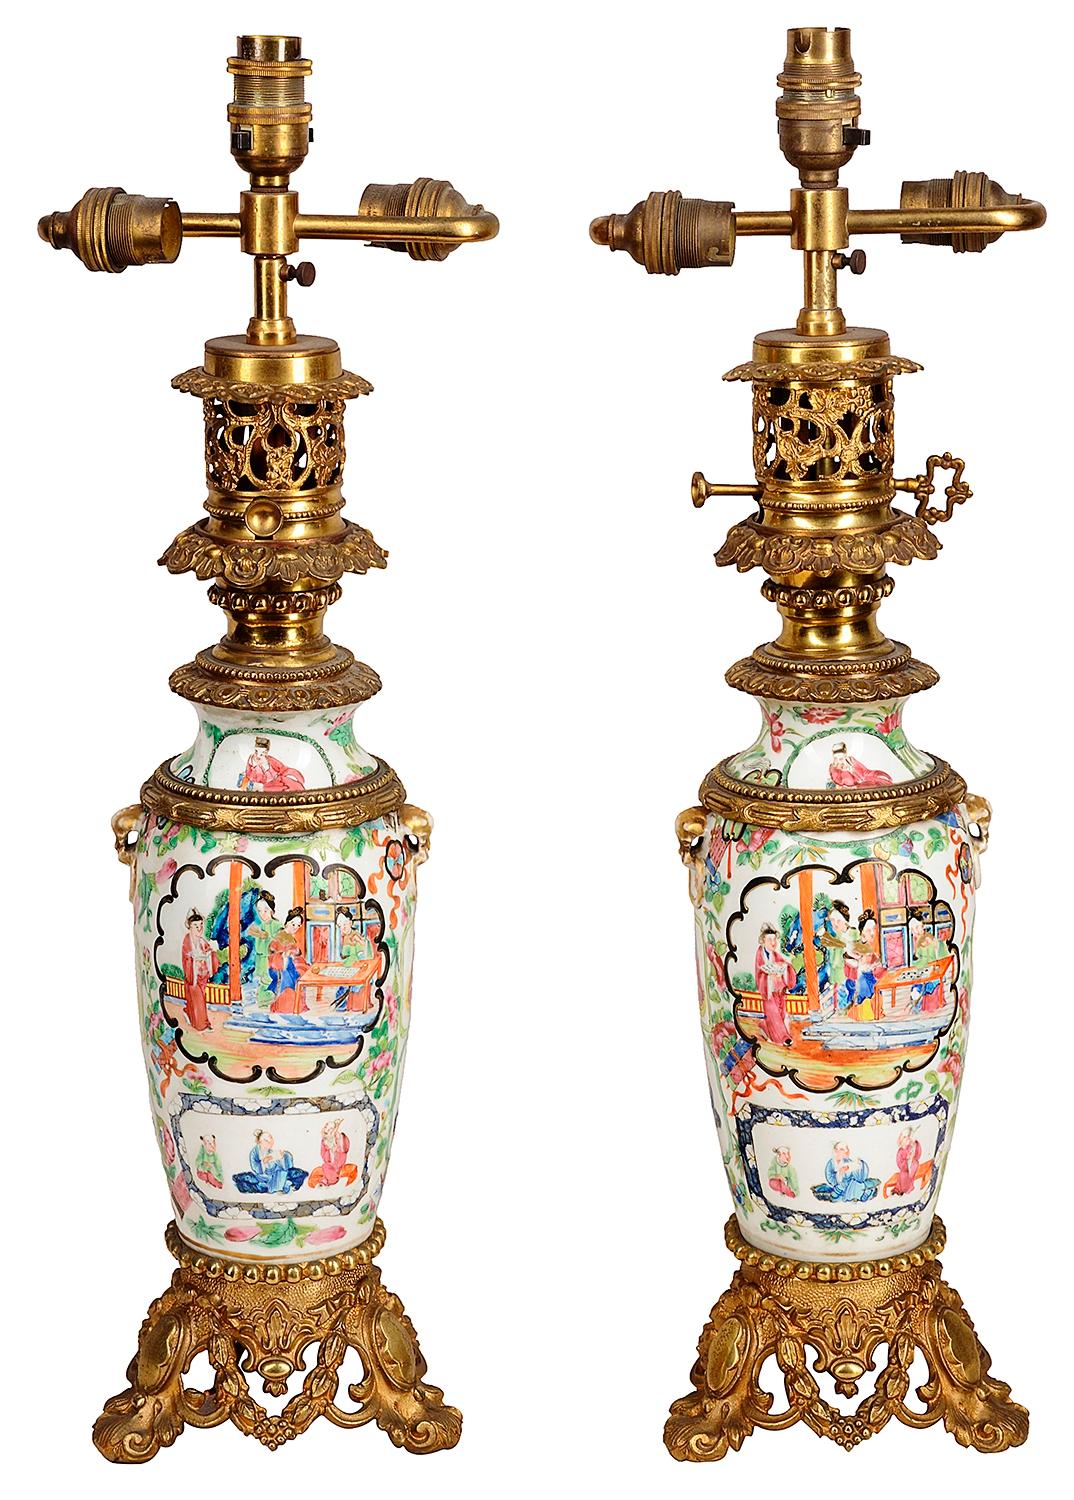 Paire de vases / lampes cantonais / à médaillon rose du 19ème siècle. Chacune d'entre elles présente un merveilleux décor sur fond vert avec des panneaux peints à la main en médaillon représentant des scènes classiques avec des filles Geisha, des